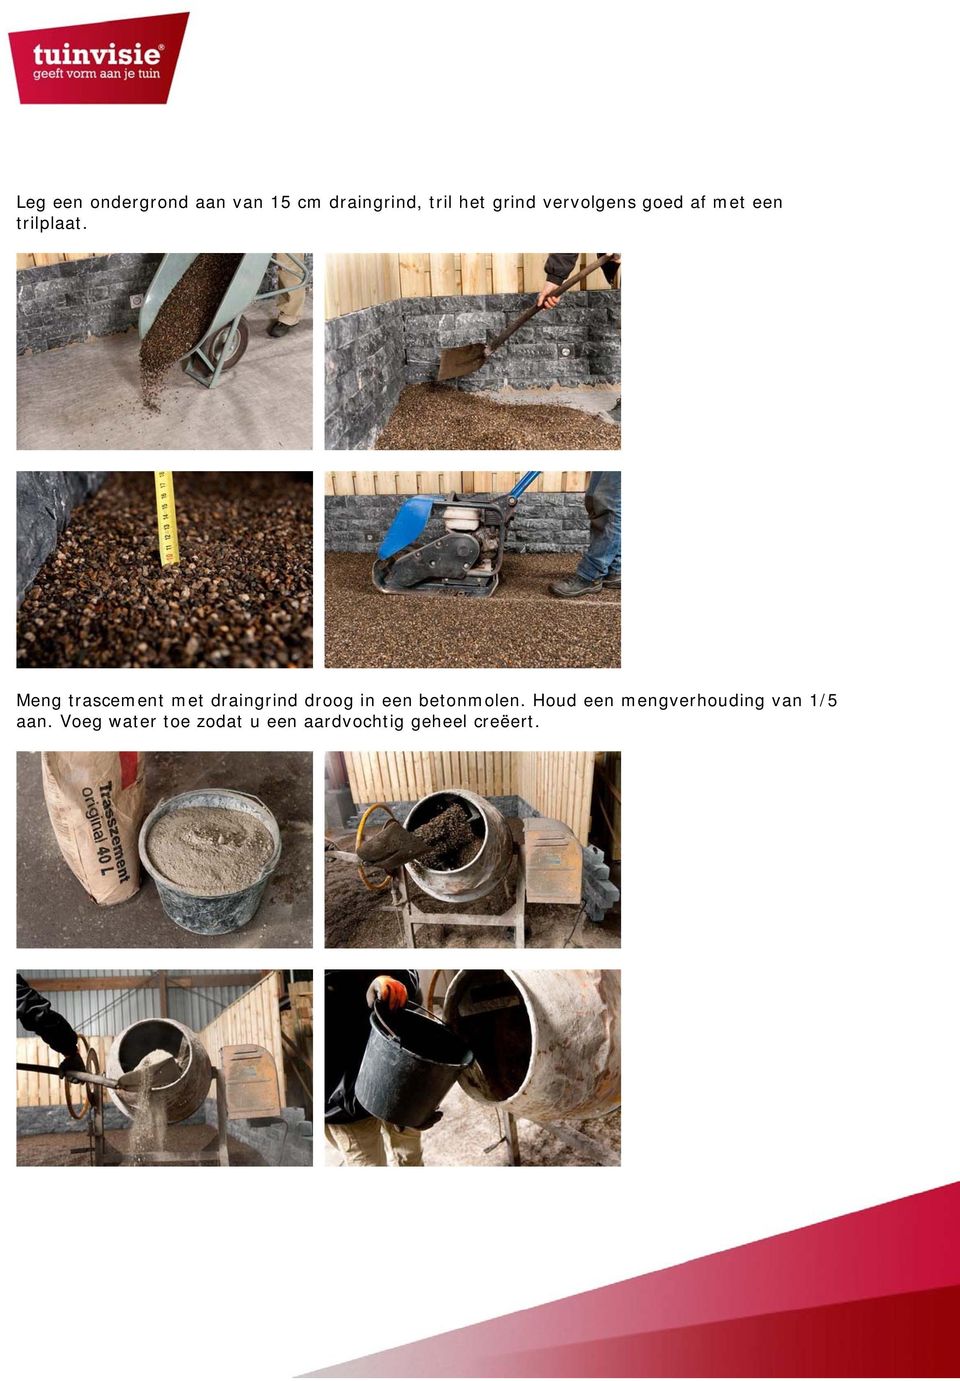 Meng trascement met draingrind droog in een betonmolen.